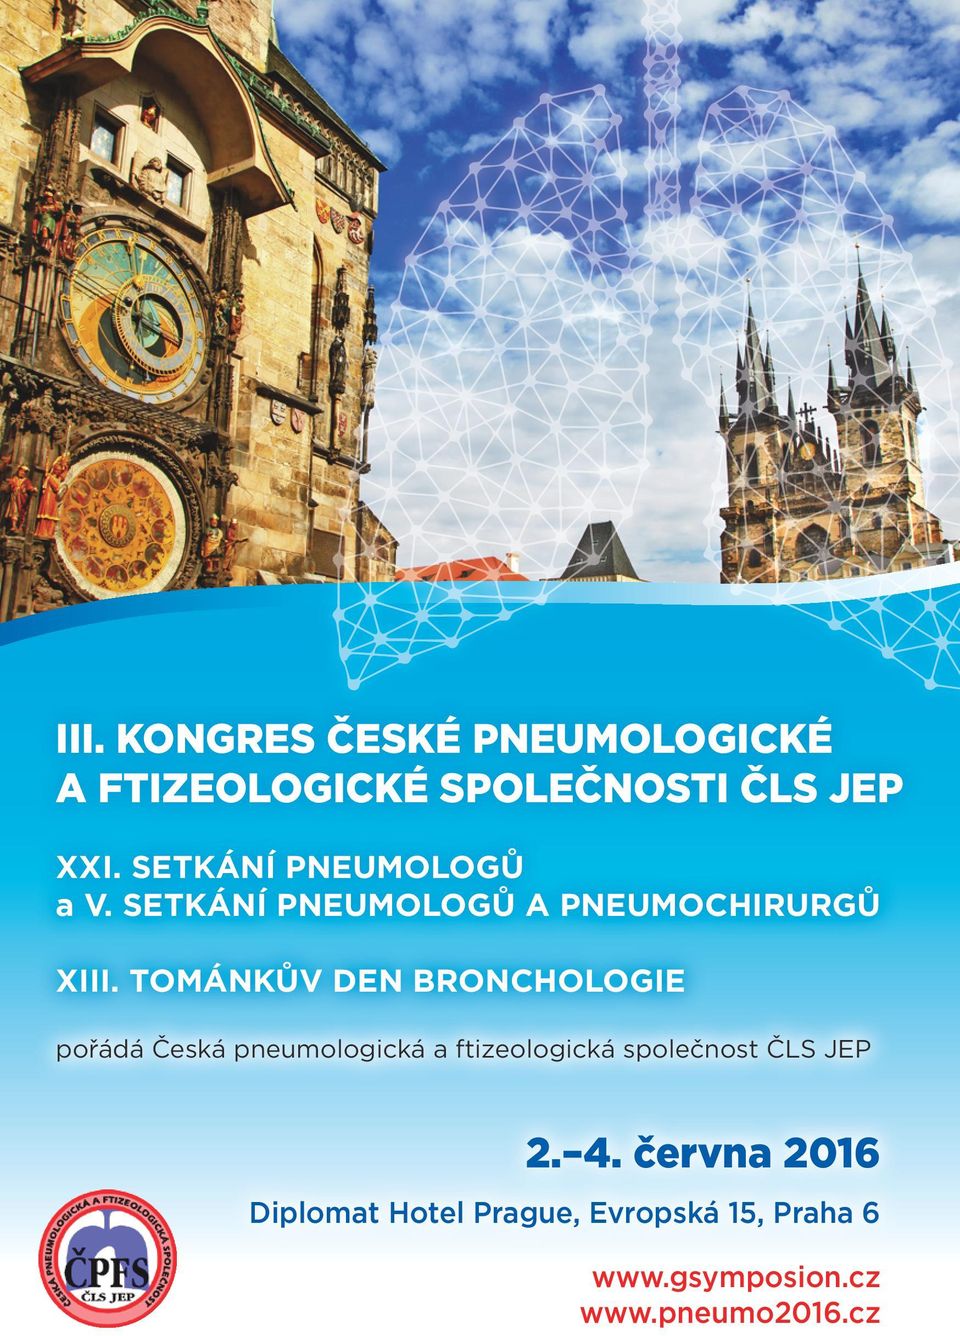 TOMÁNKŮV DEN BRONCHOLOGIE pořádá Česká pneumologická a ftizeologická společnost